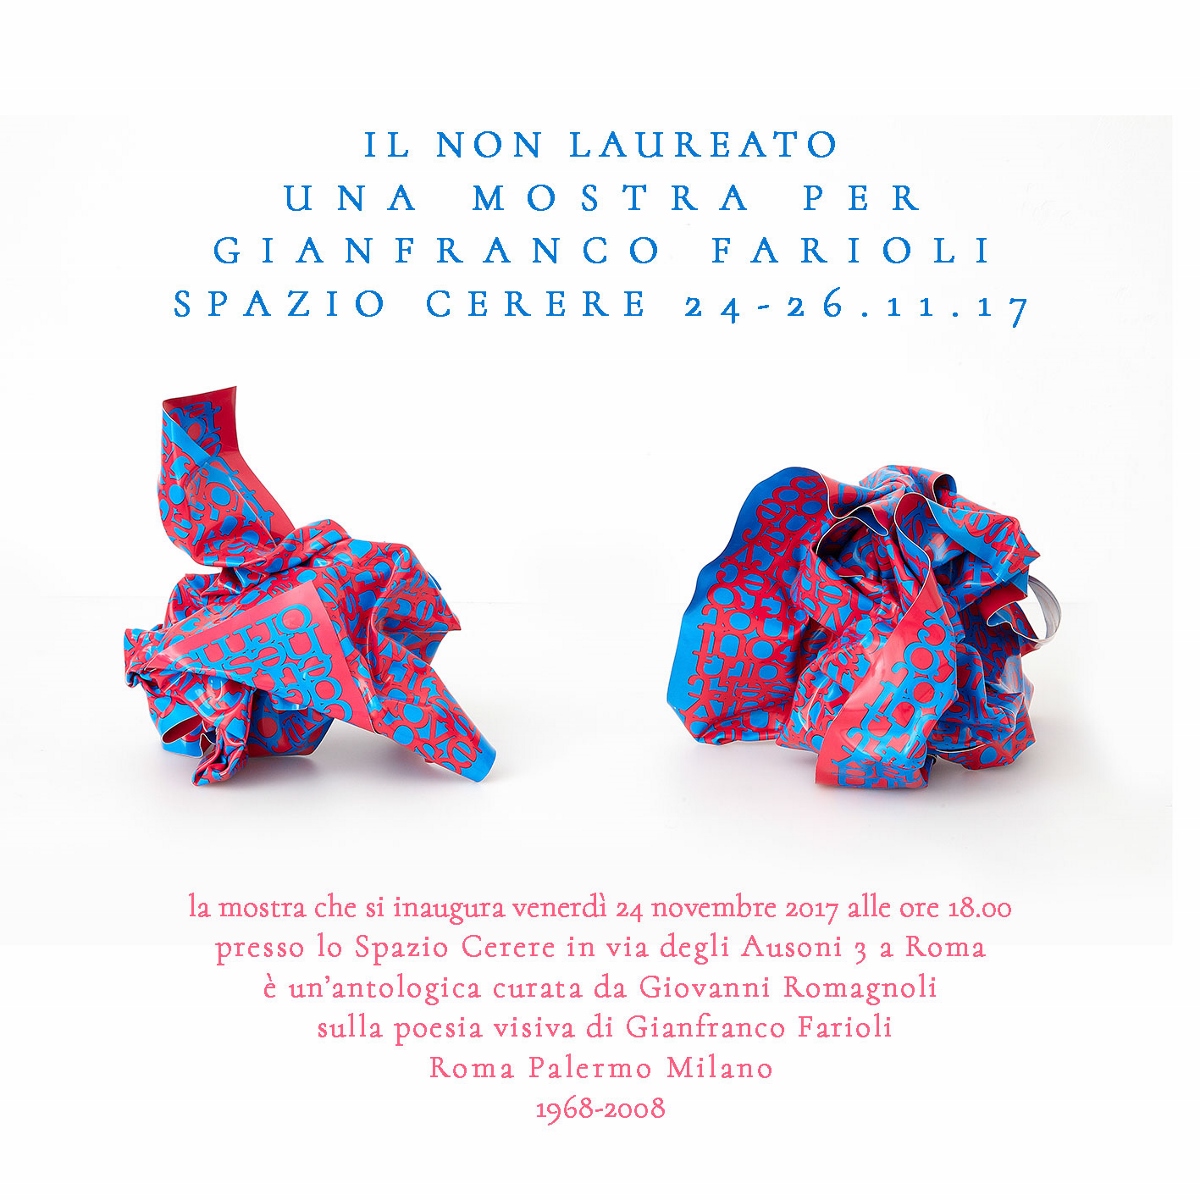 Gianfranco Farioli – Il non laureato